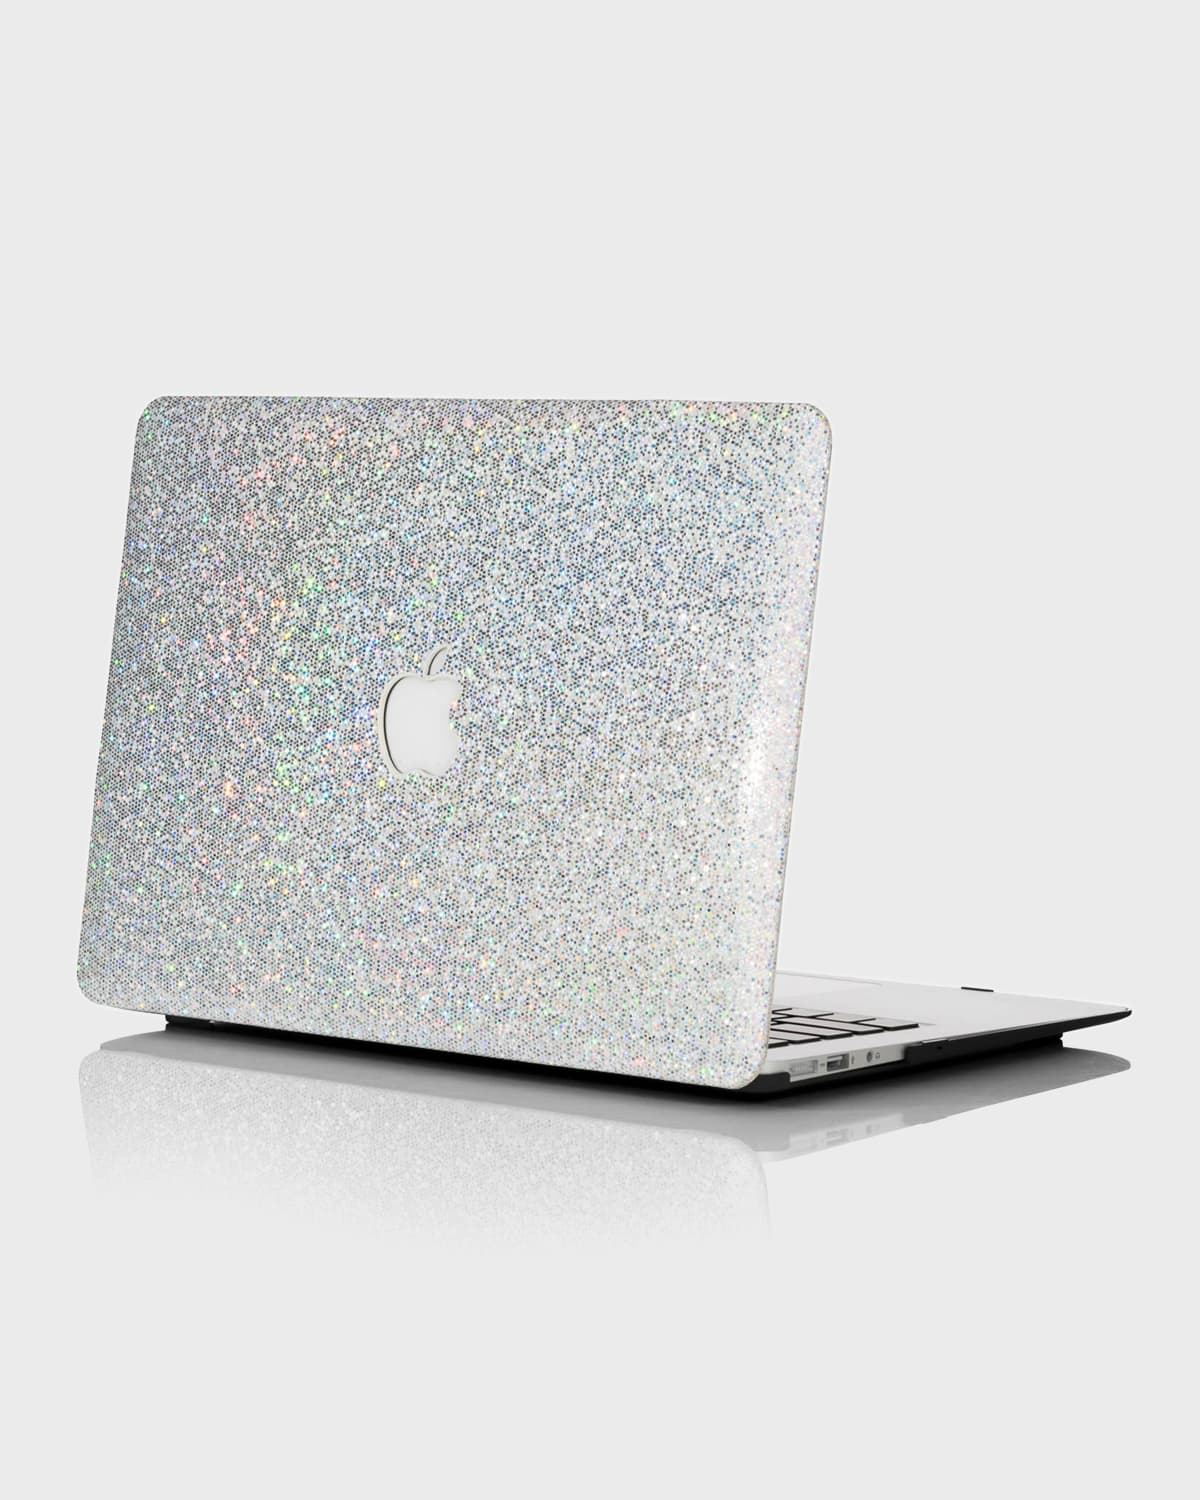 Shop Chic Geeks Sparkle 15" Macbook Pro With Touchbar Case In Unicorn Sparkle